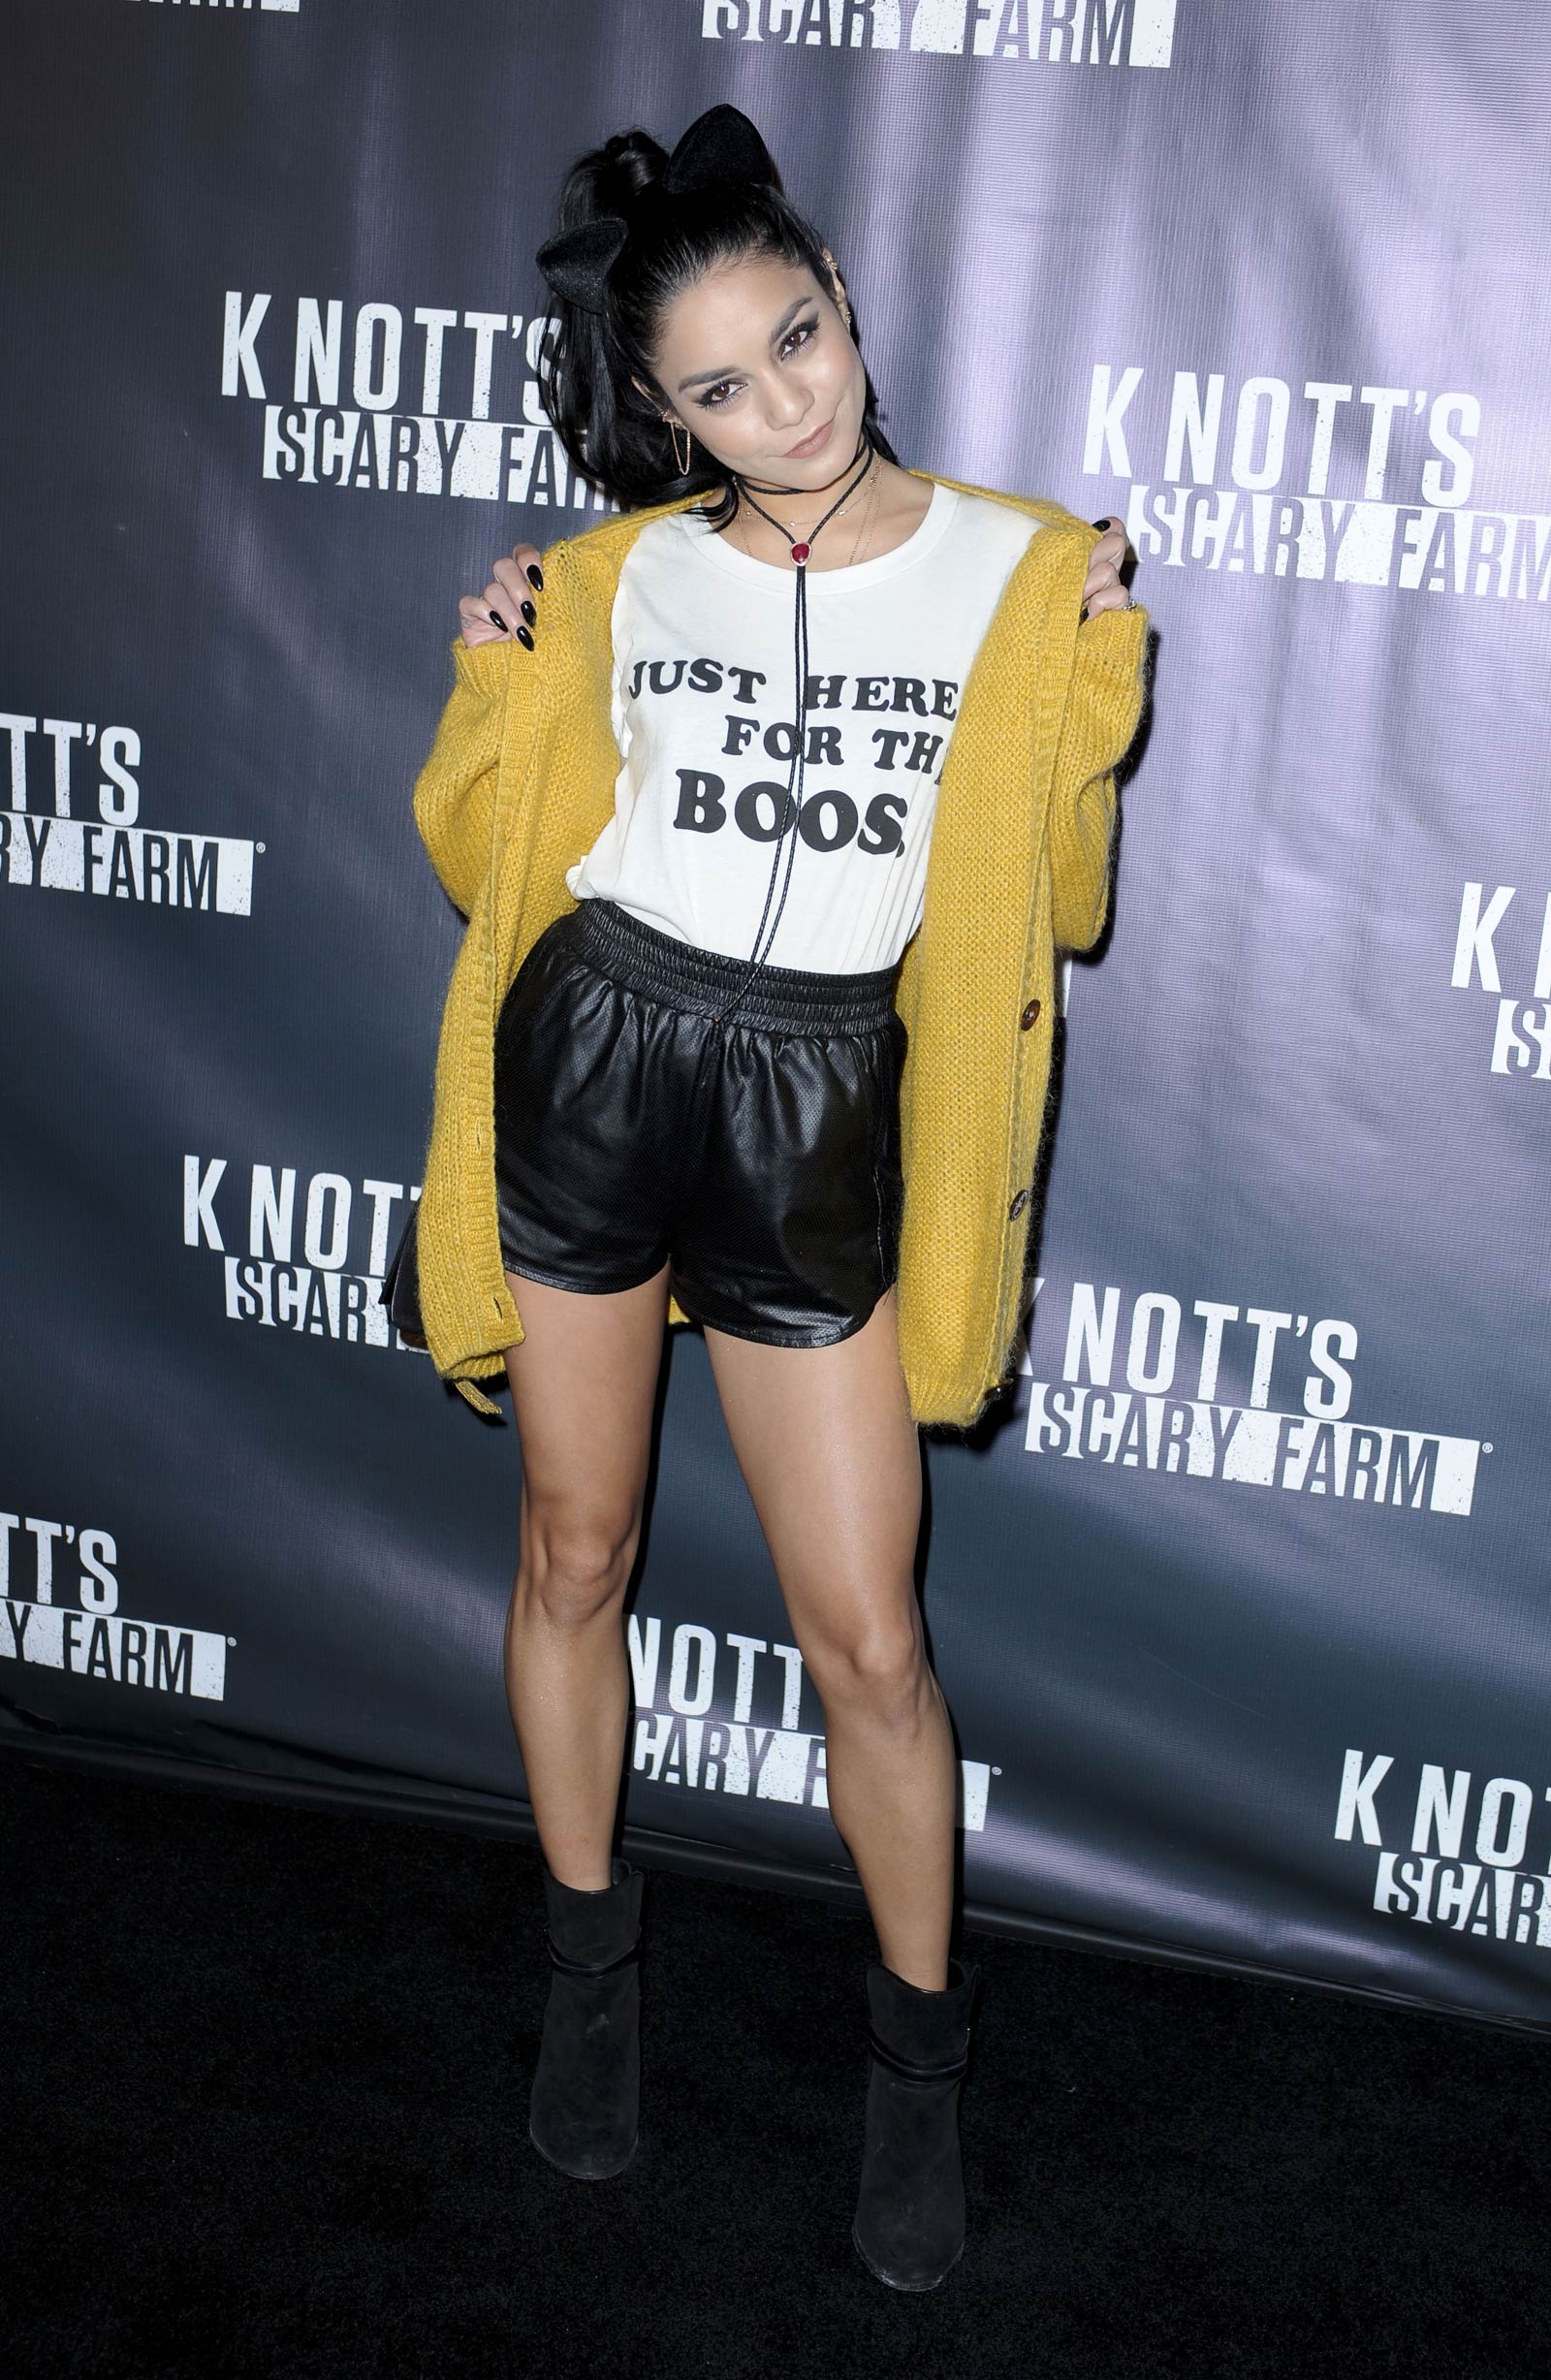 Vanessa Hudgens attends Knott’s Scary Farm Black Carpet event